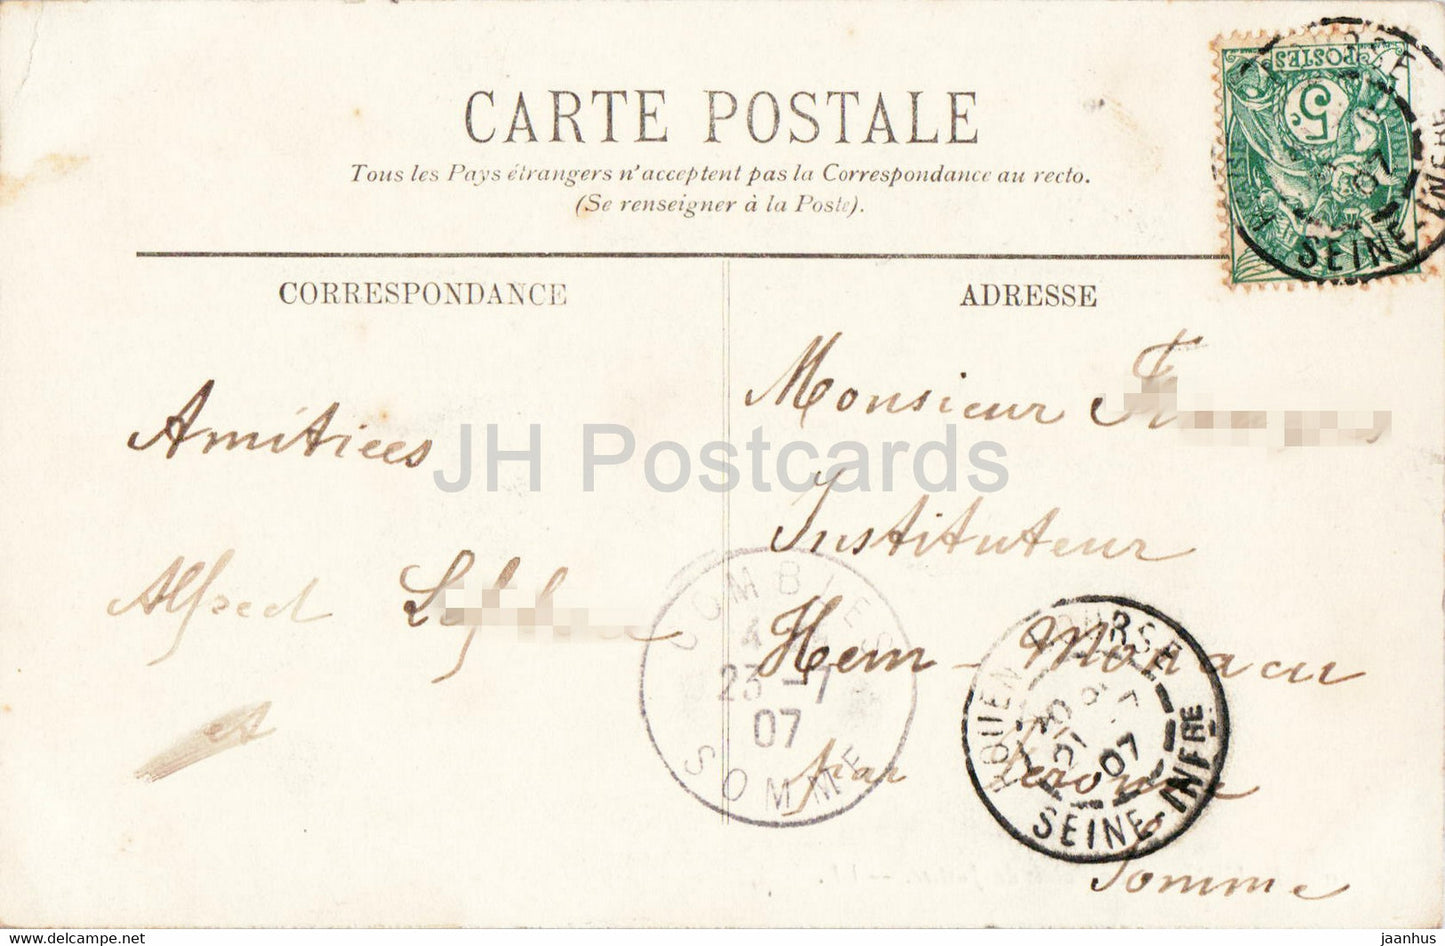 Rouen - Le Palais de Justice - 10 - alte Postkarte - 1907 - Frankreich - gebraucht